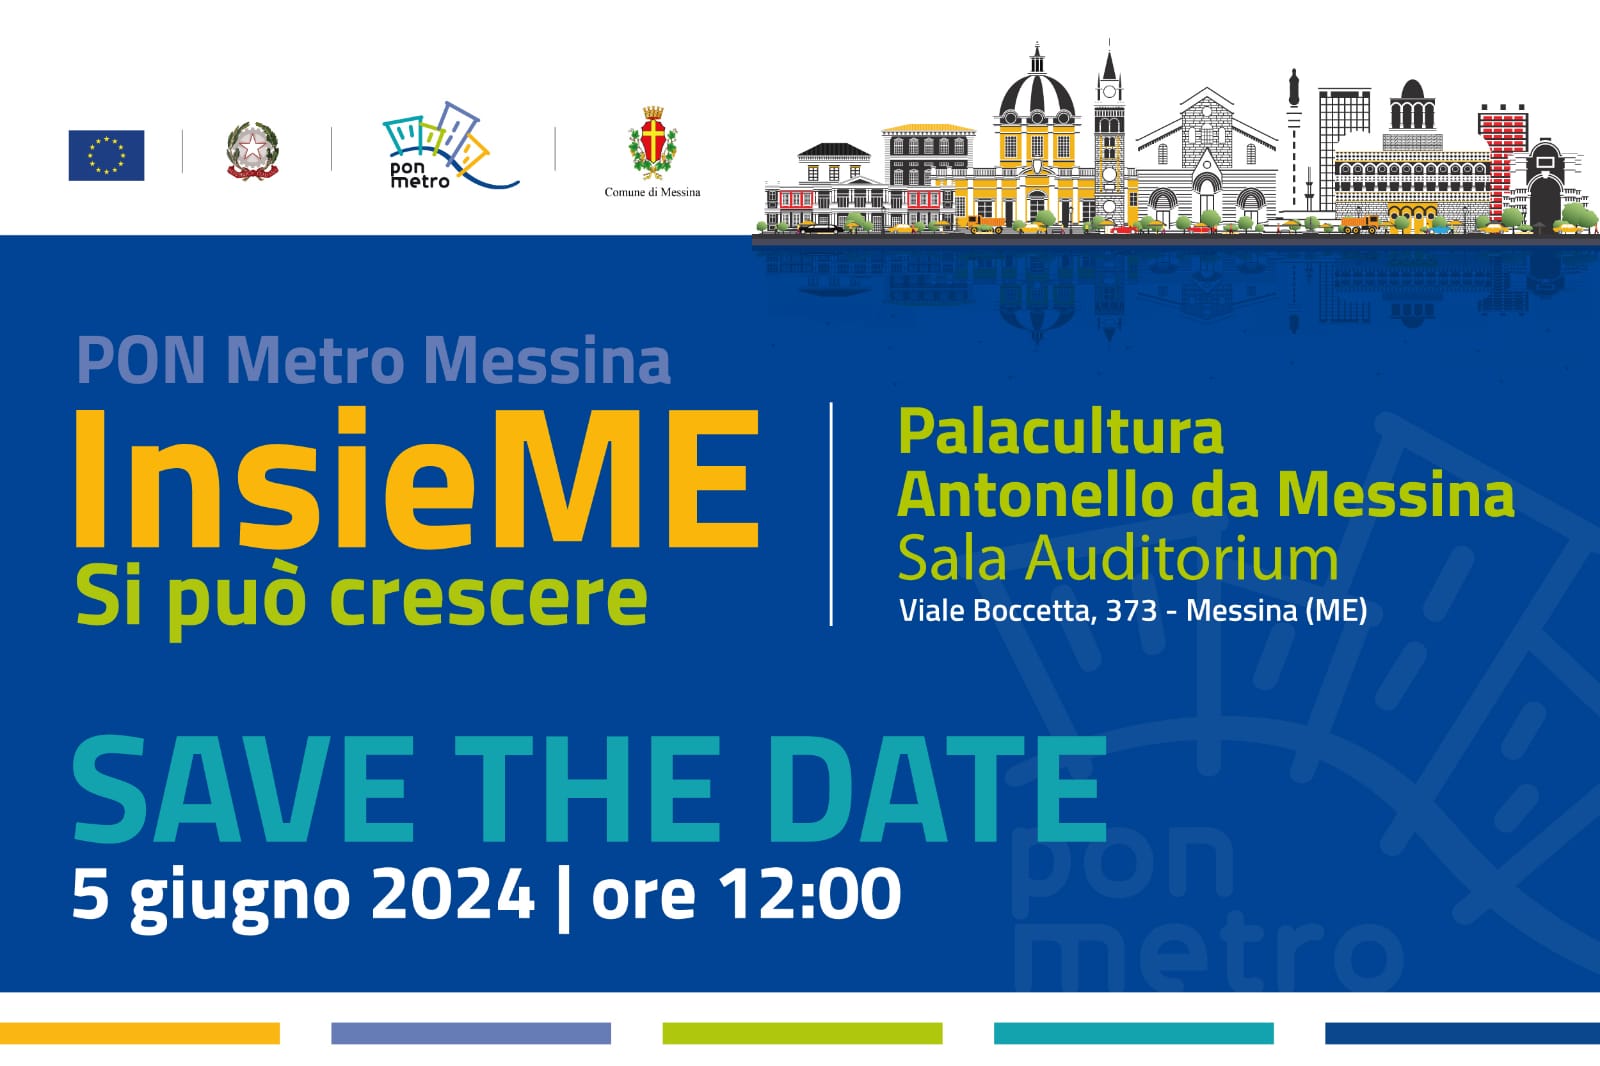 PON Metro Messina “INSIEME SI PUÒ CRESCERE”: domani l’evento pubblico al Palacultura “Antonello da Messina”